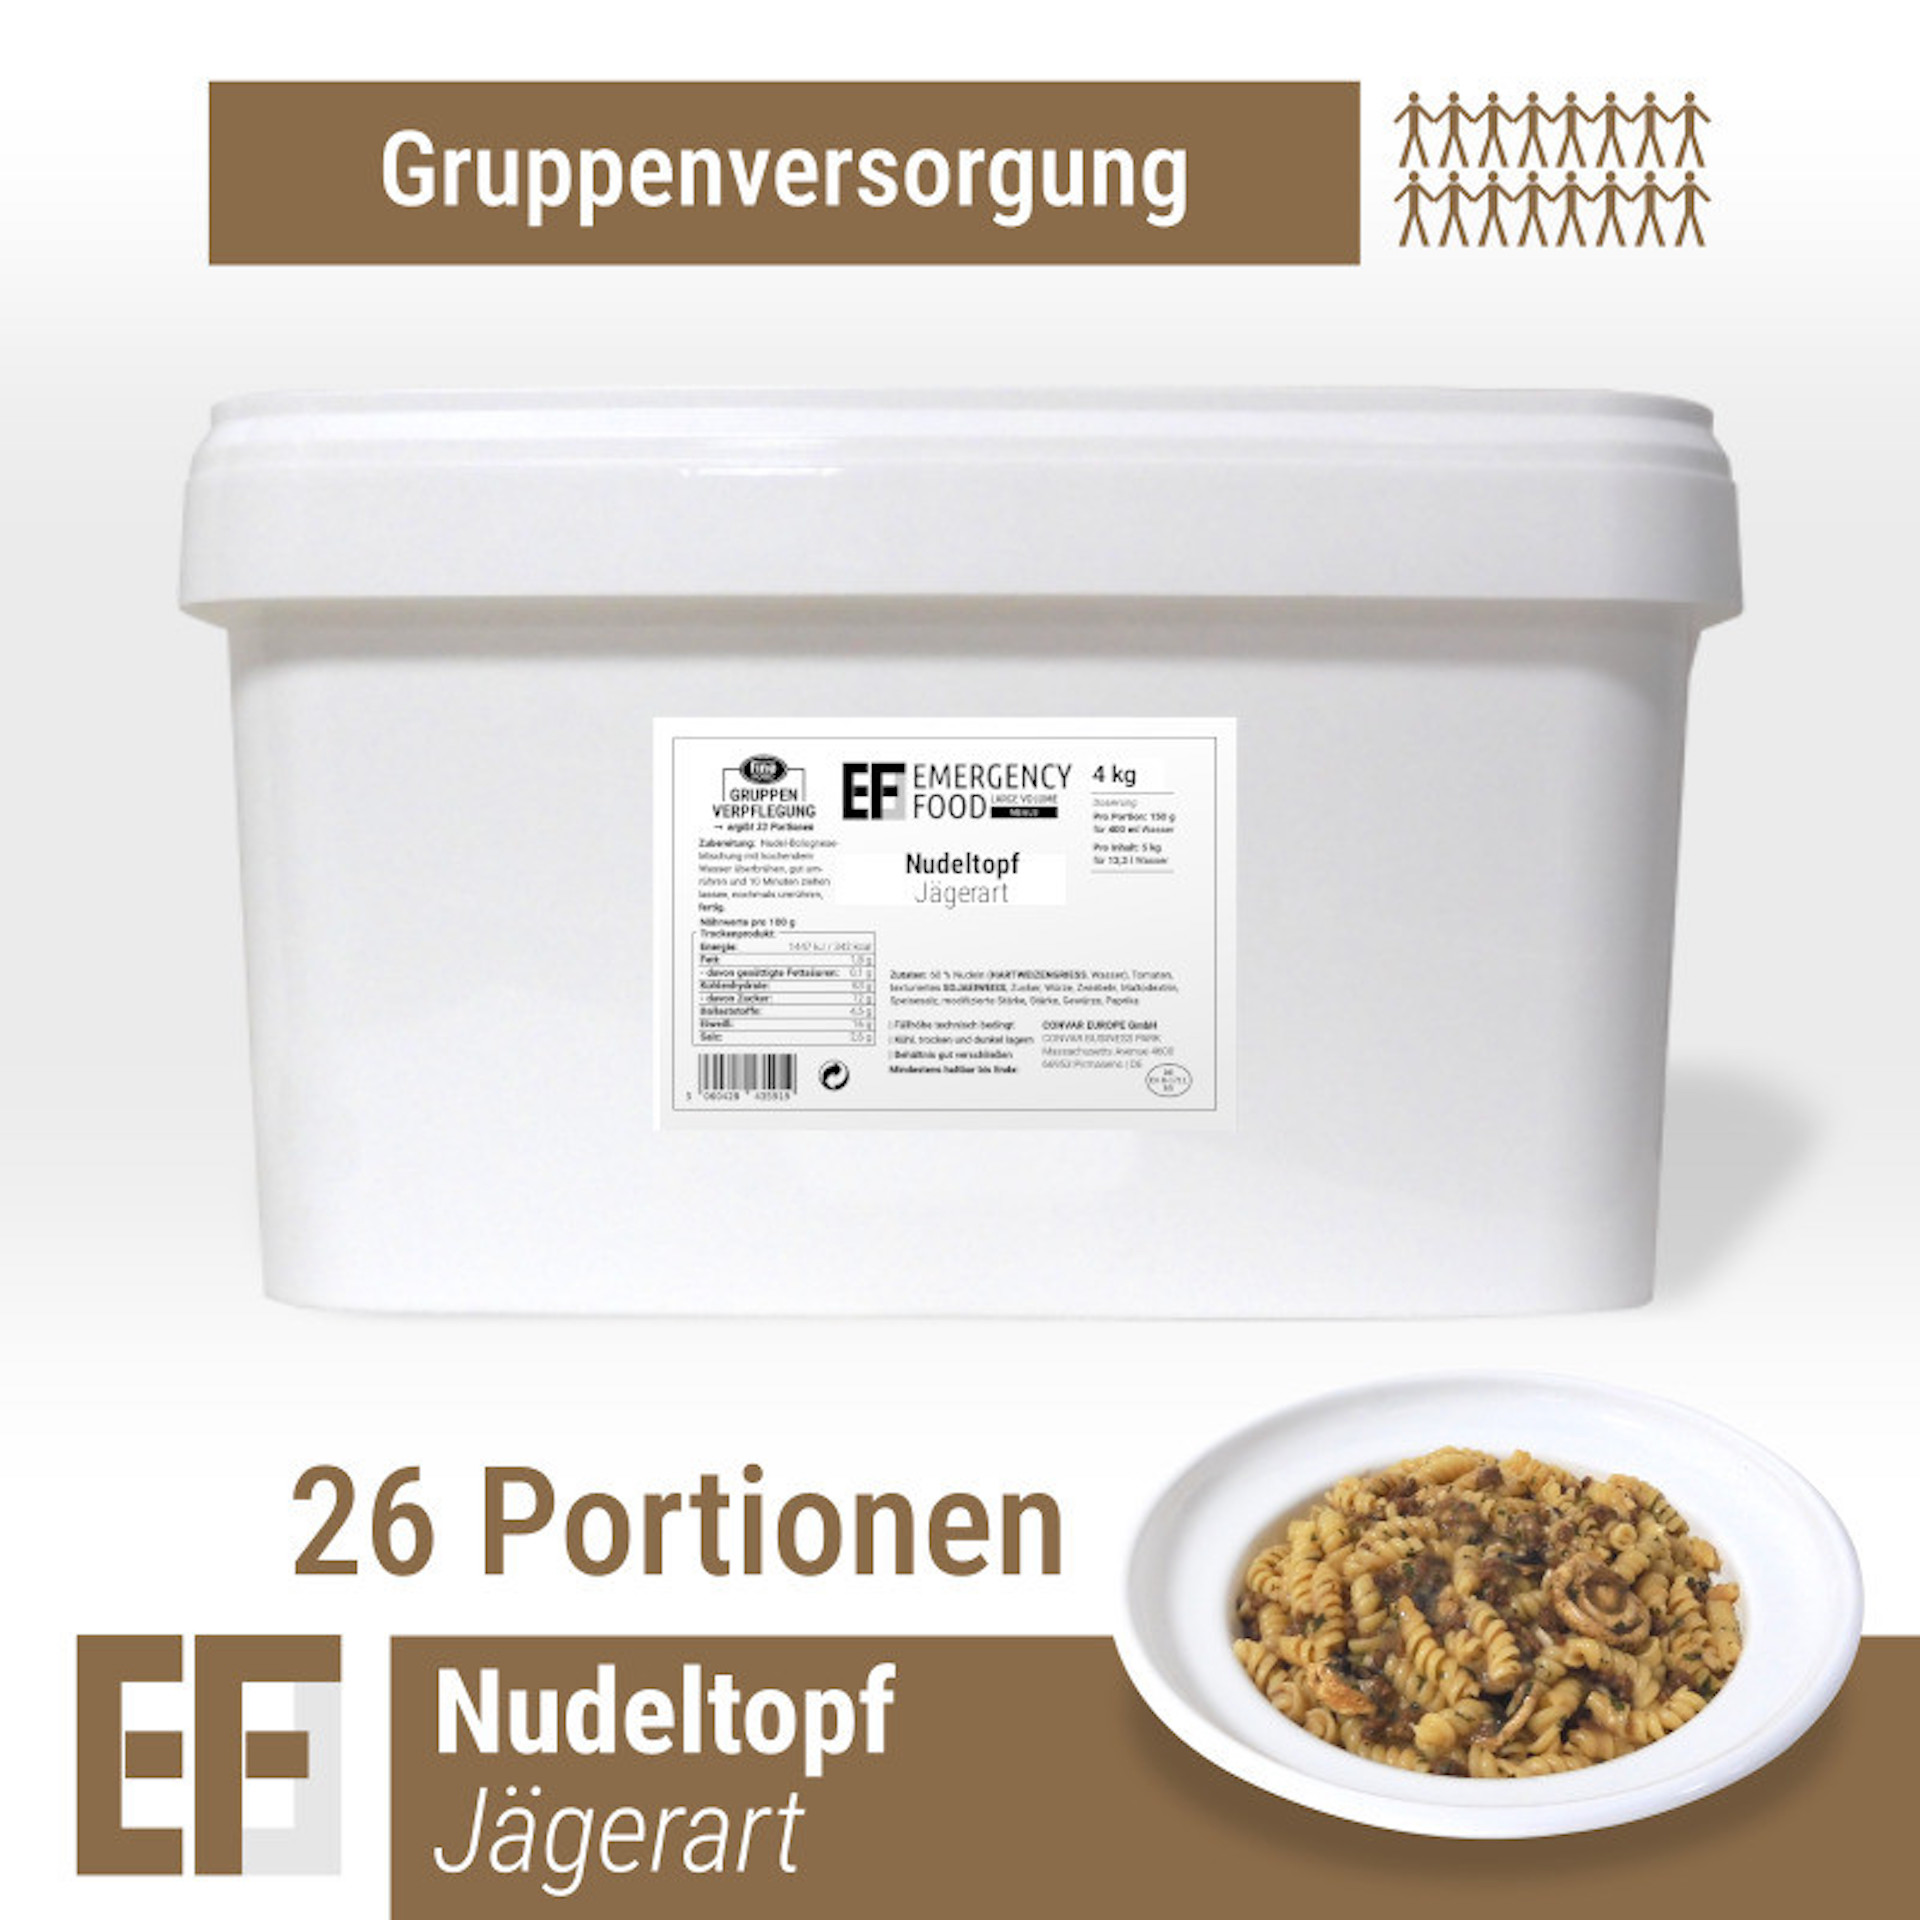 CONVAR EF MEALS Nudeltopf Jägerart (4kg)